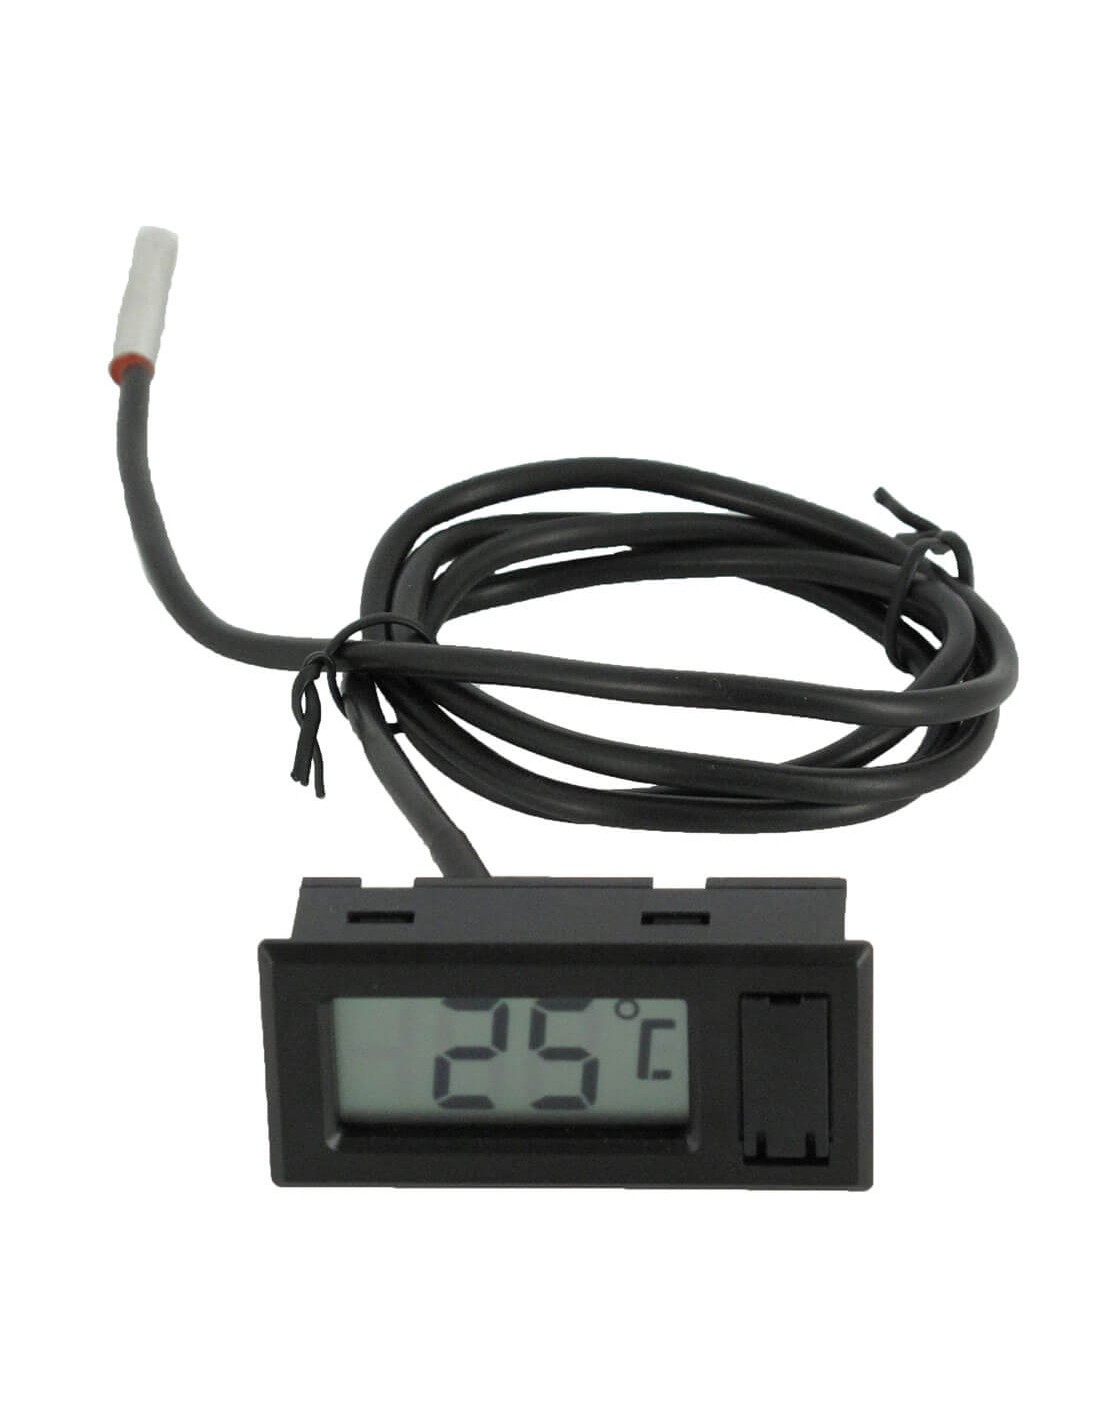 Thermomètre digital à sonde avec fonction minuteur, acier inox, Thermomètres,  thermomètre digital à sonde électronique - De Bu